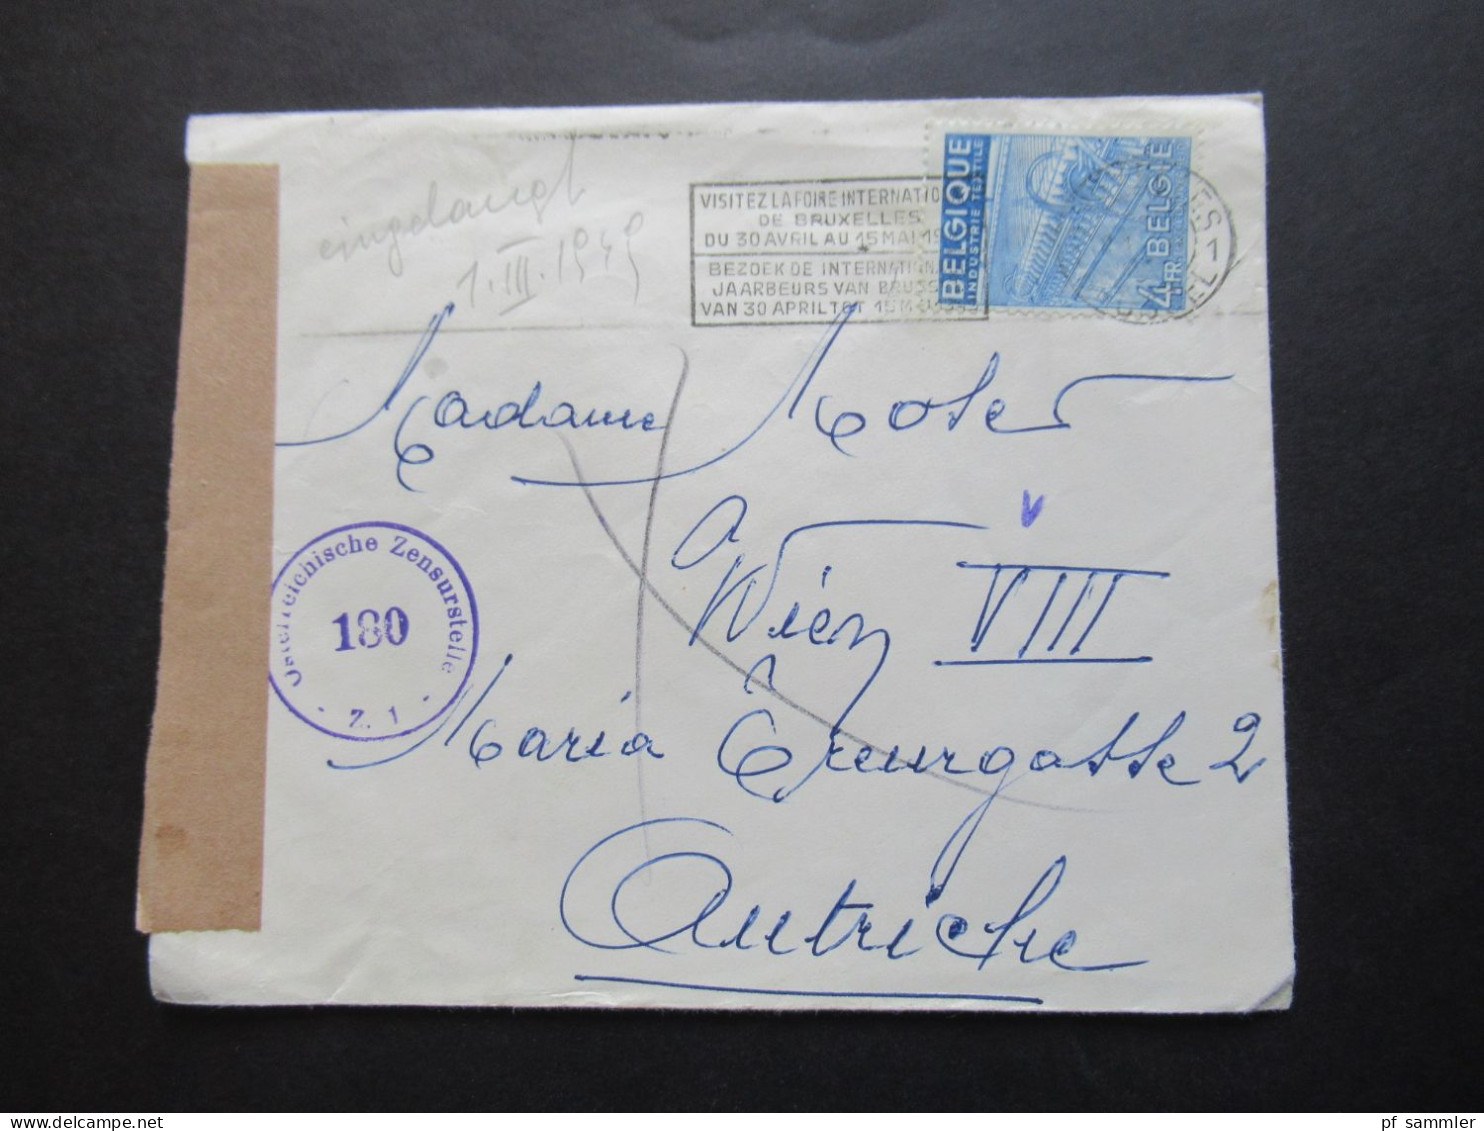 Belgien 1949 Auslandsbrief Nach Wien Zensurbeleg / Stempel Österrereichische Zensurstelle 180 Und Violetter Stempel V - Covers & Documents